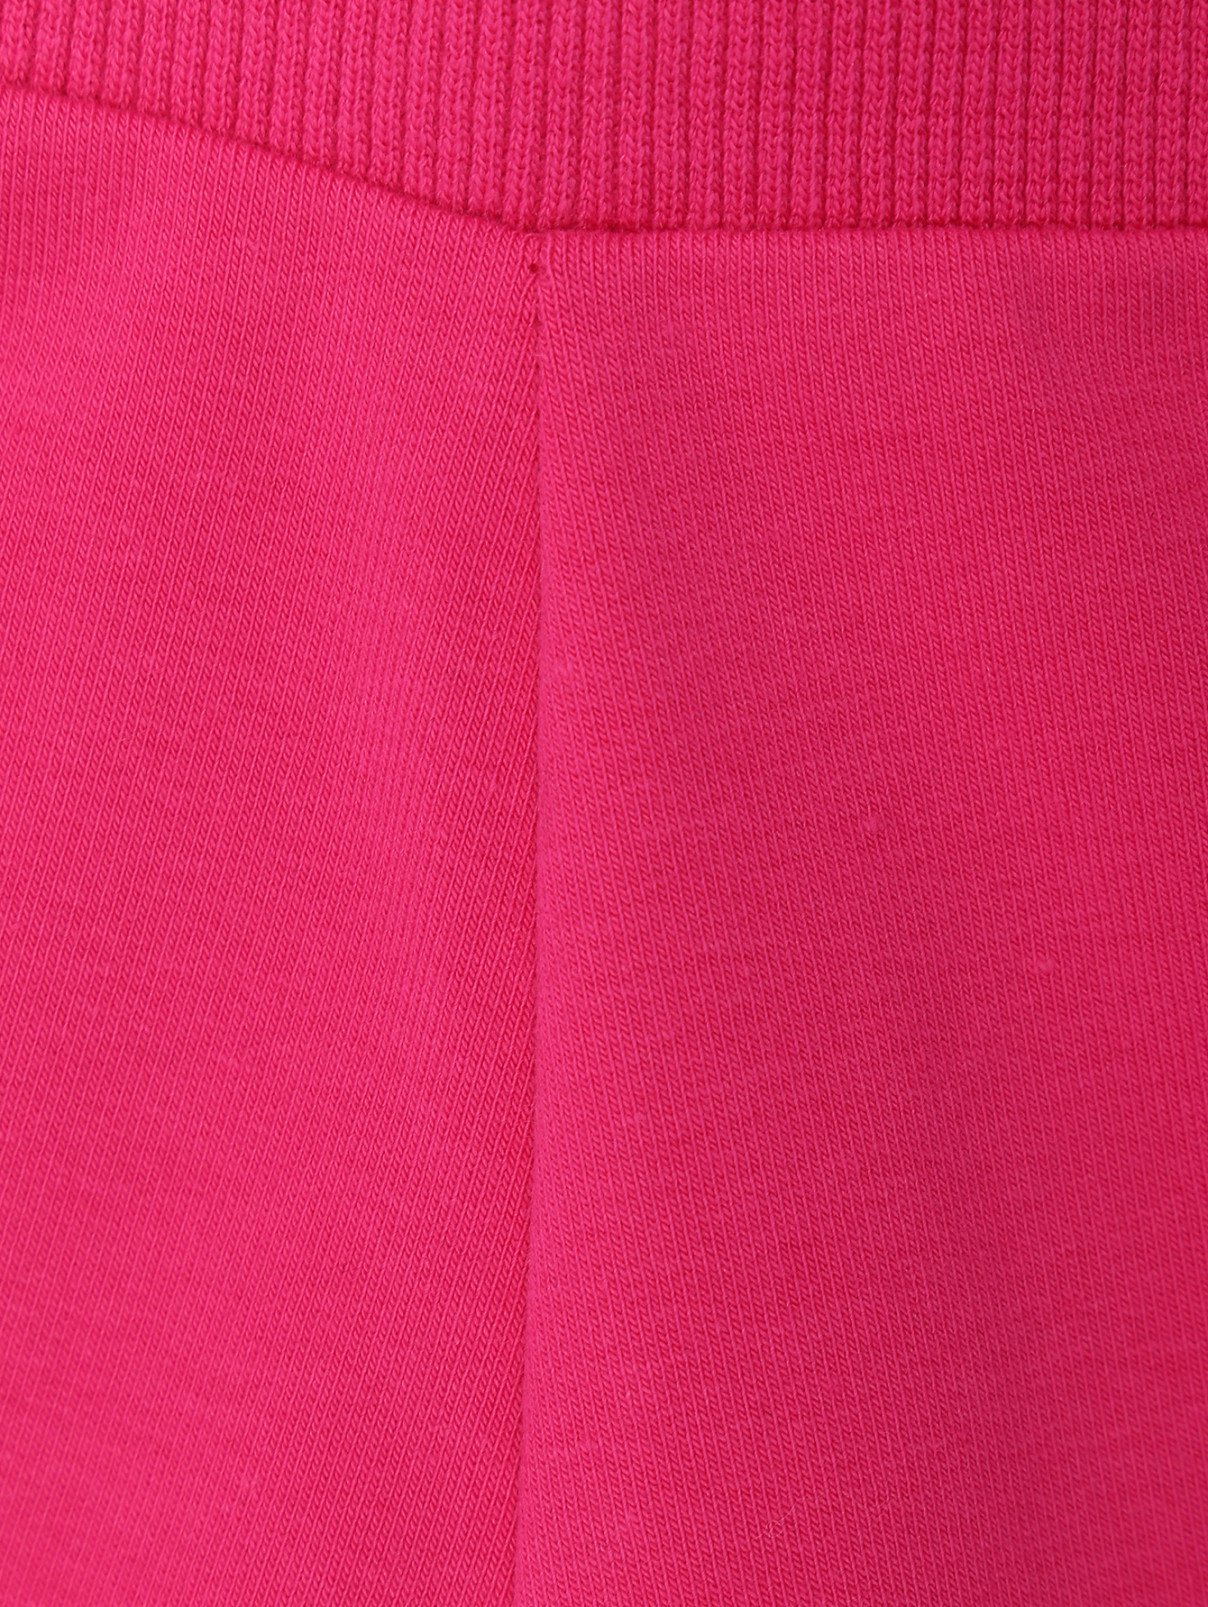 Брюки из хлопка на резинке с принтом Moschino Underwear  –  Деталь  – Цвет:  Розовый